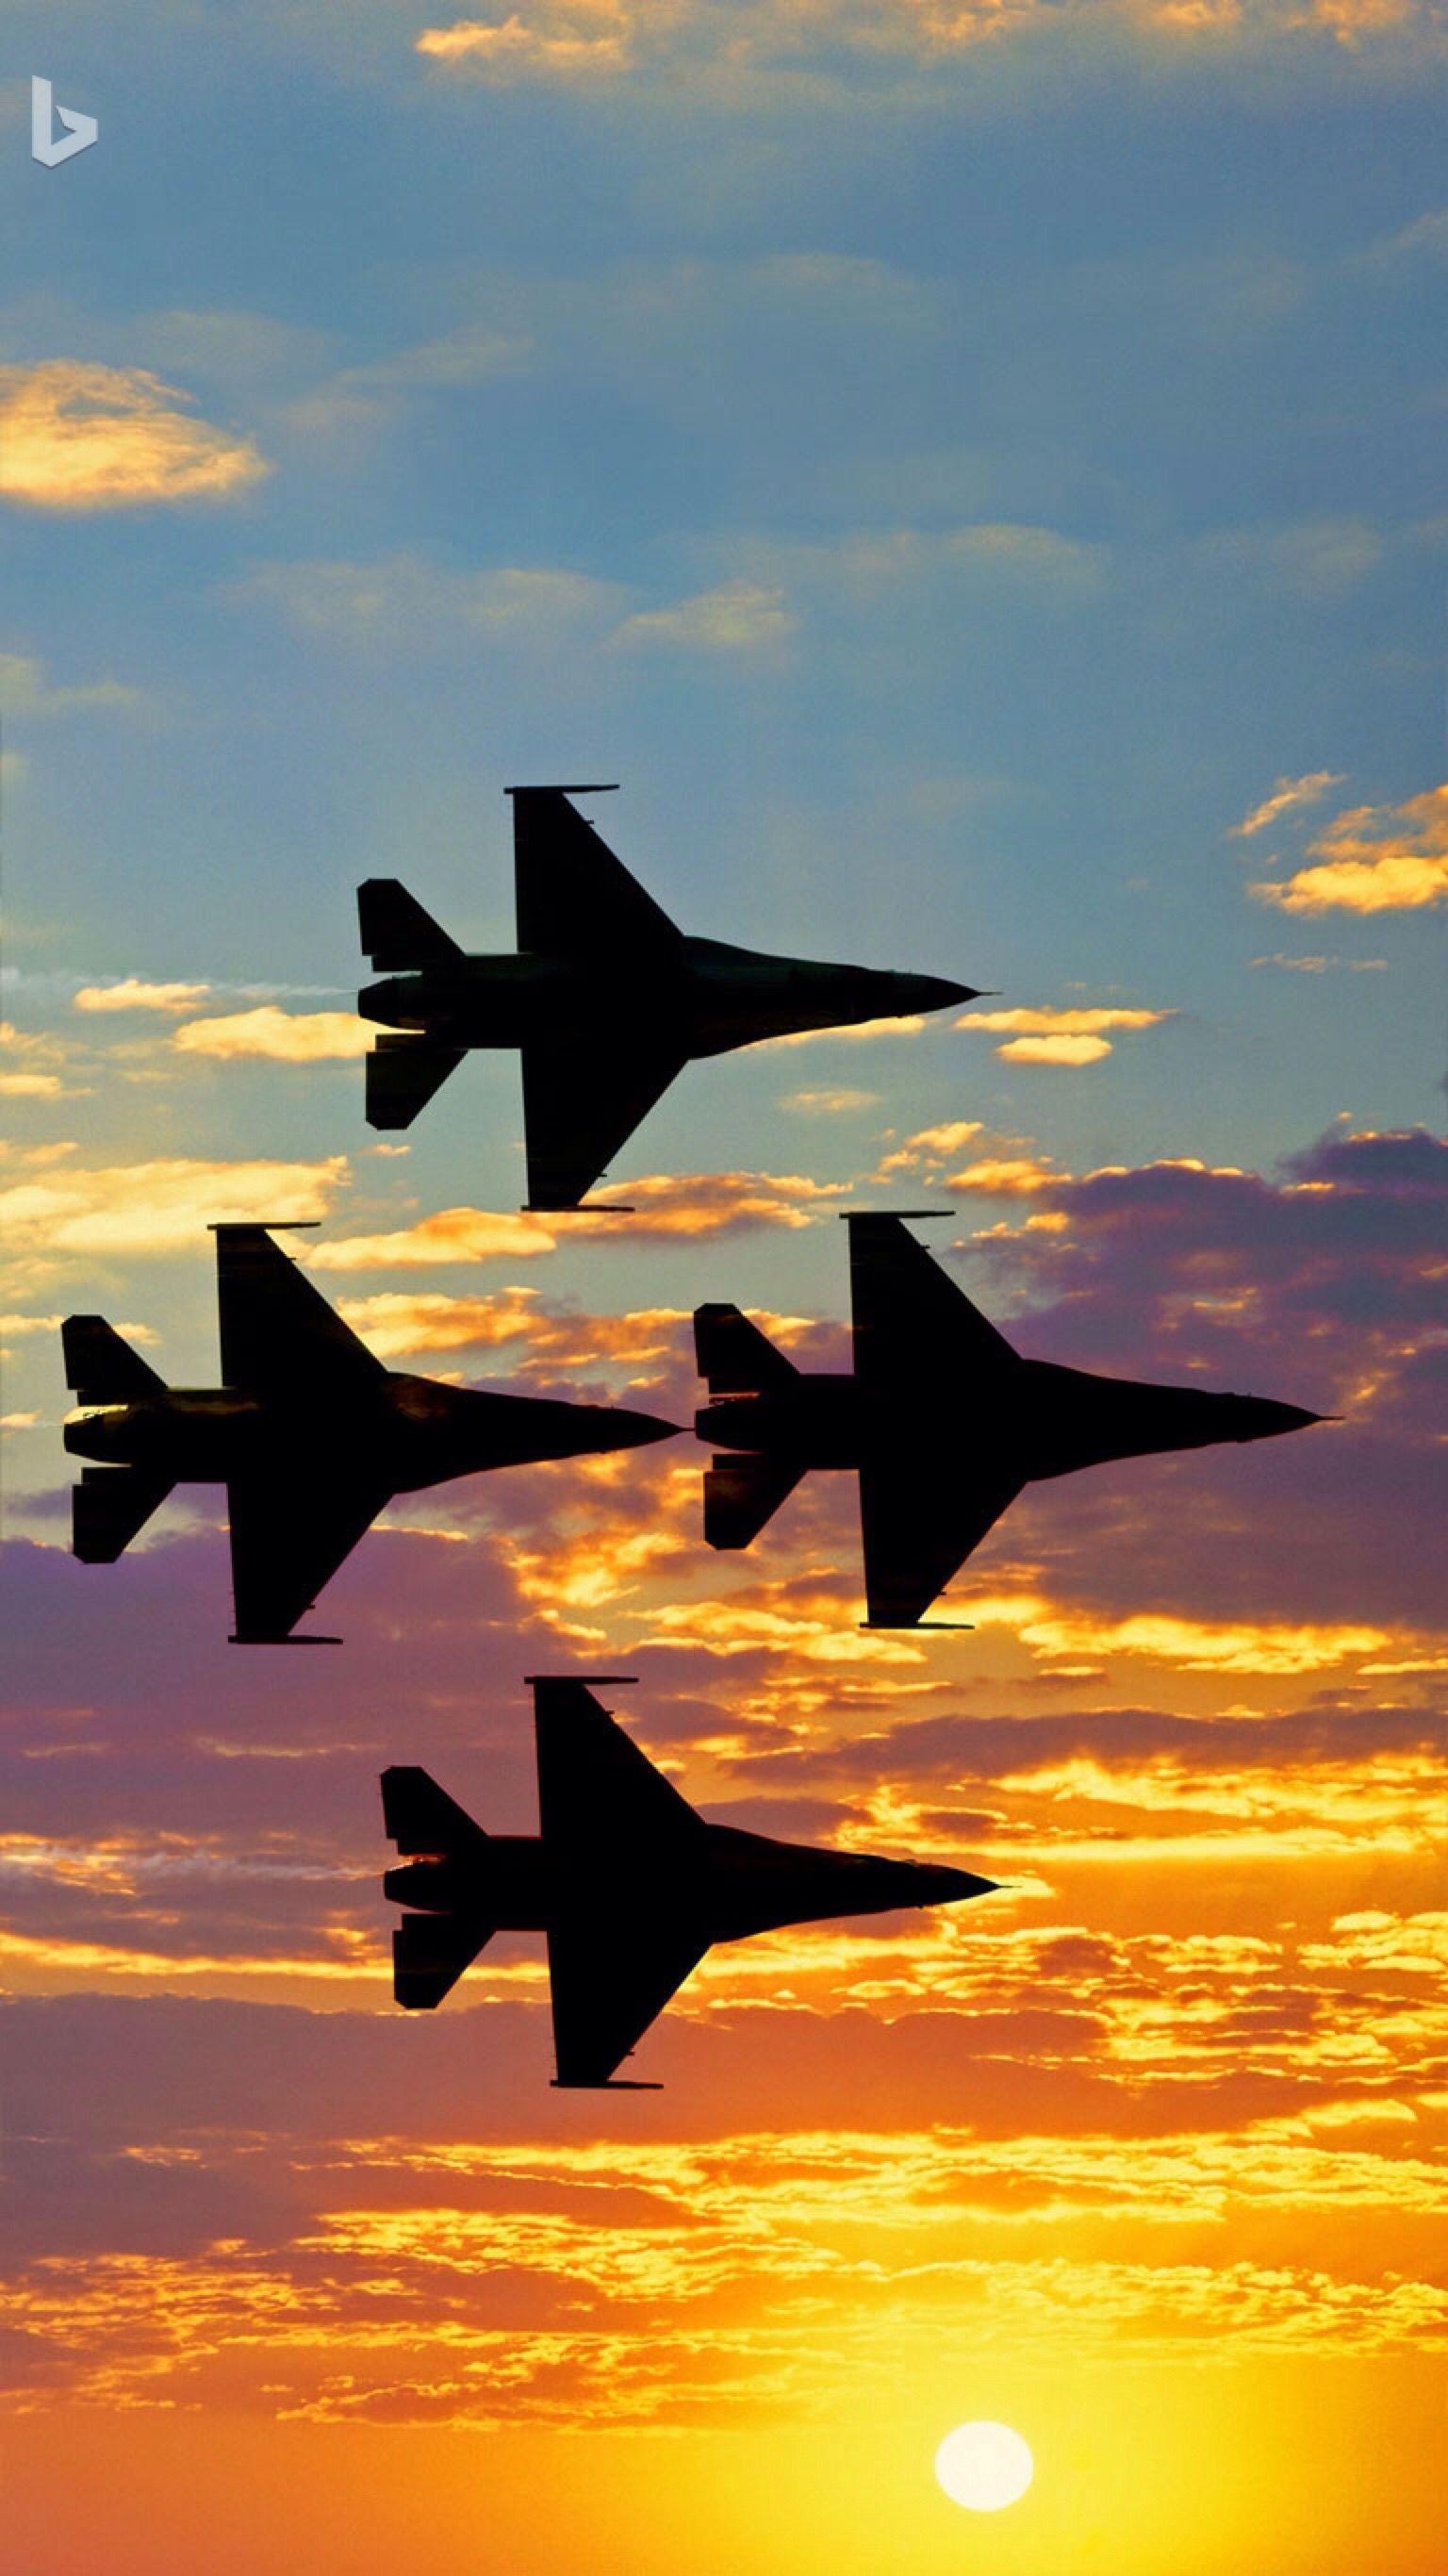 Wallpaper Fighter USAF F22 Raptor images for desktop section авиация   download